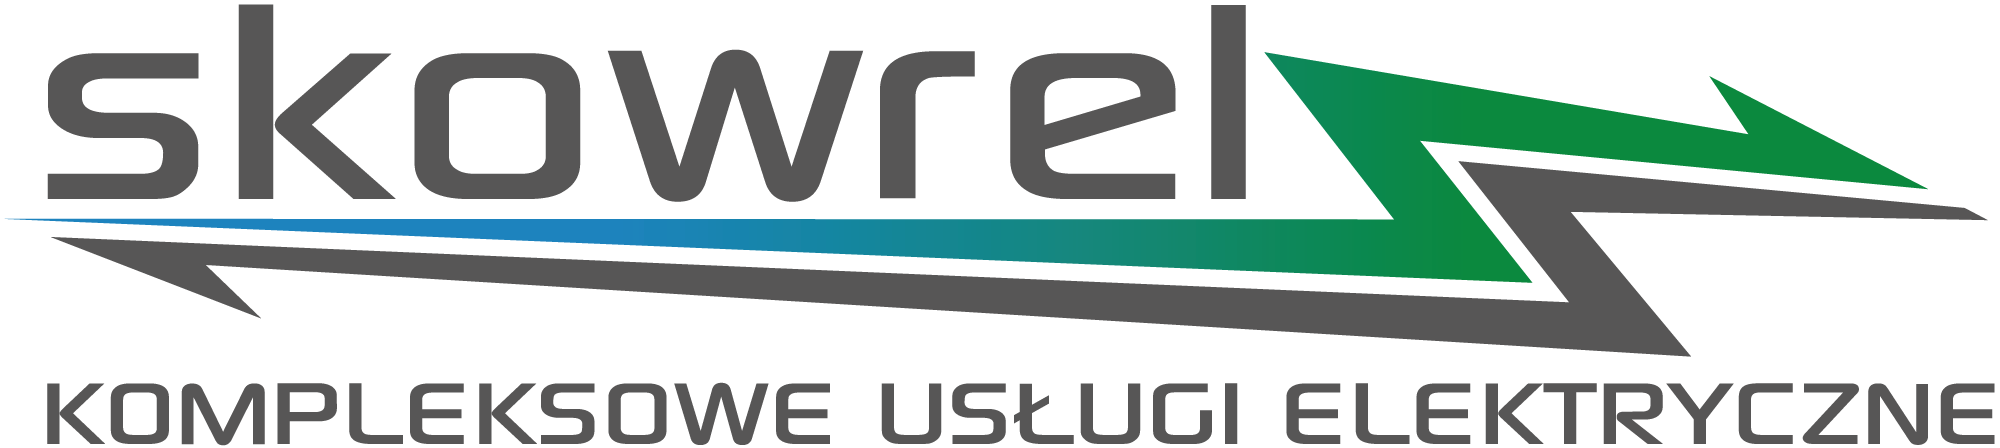 usługi elektryczne Skowrel logo